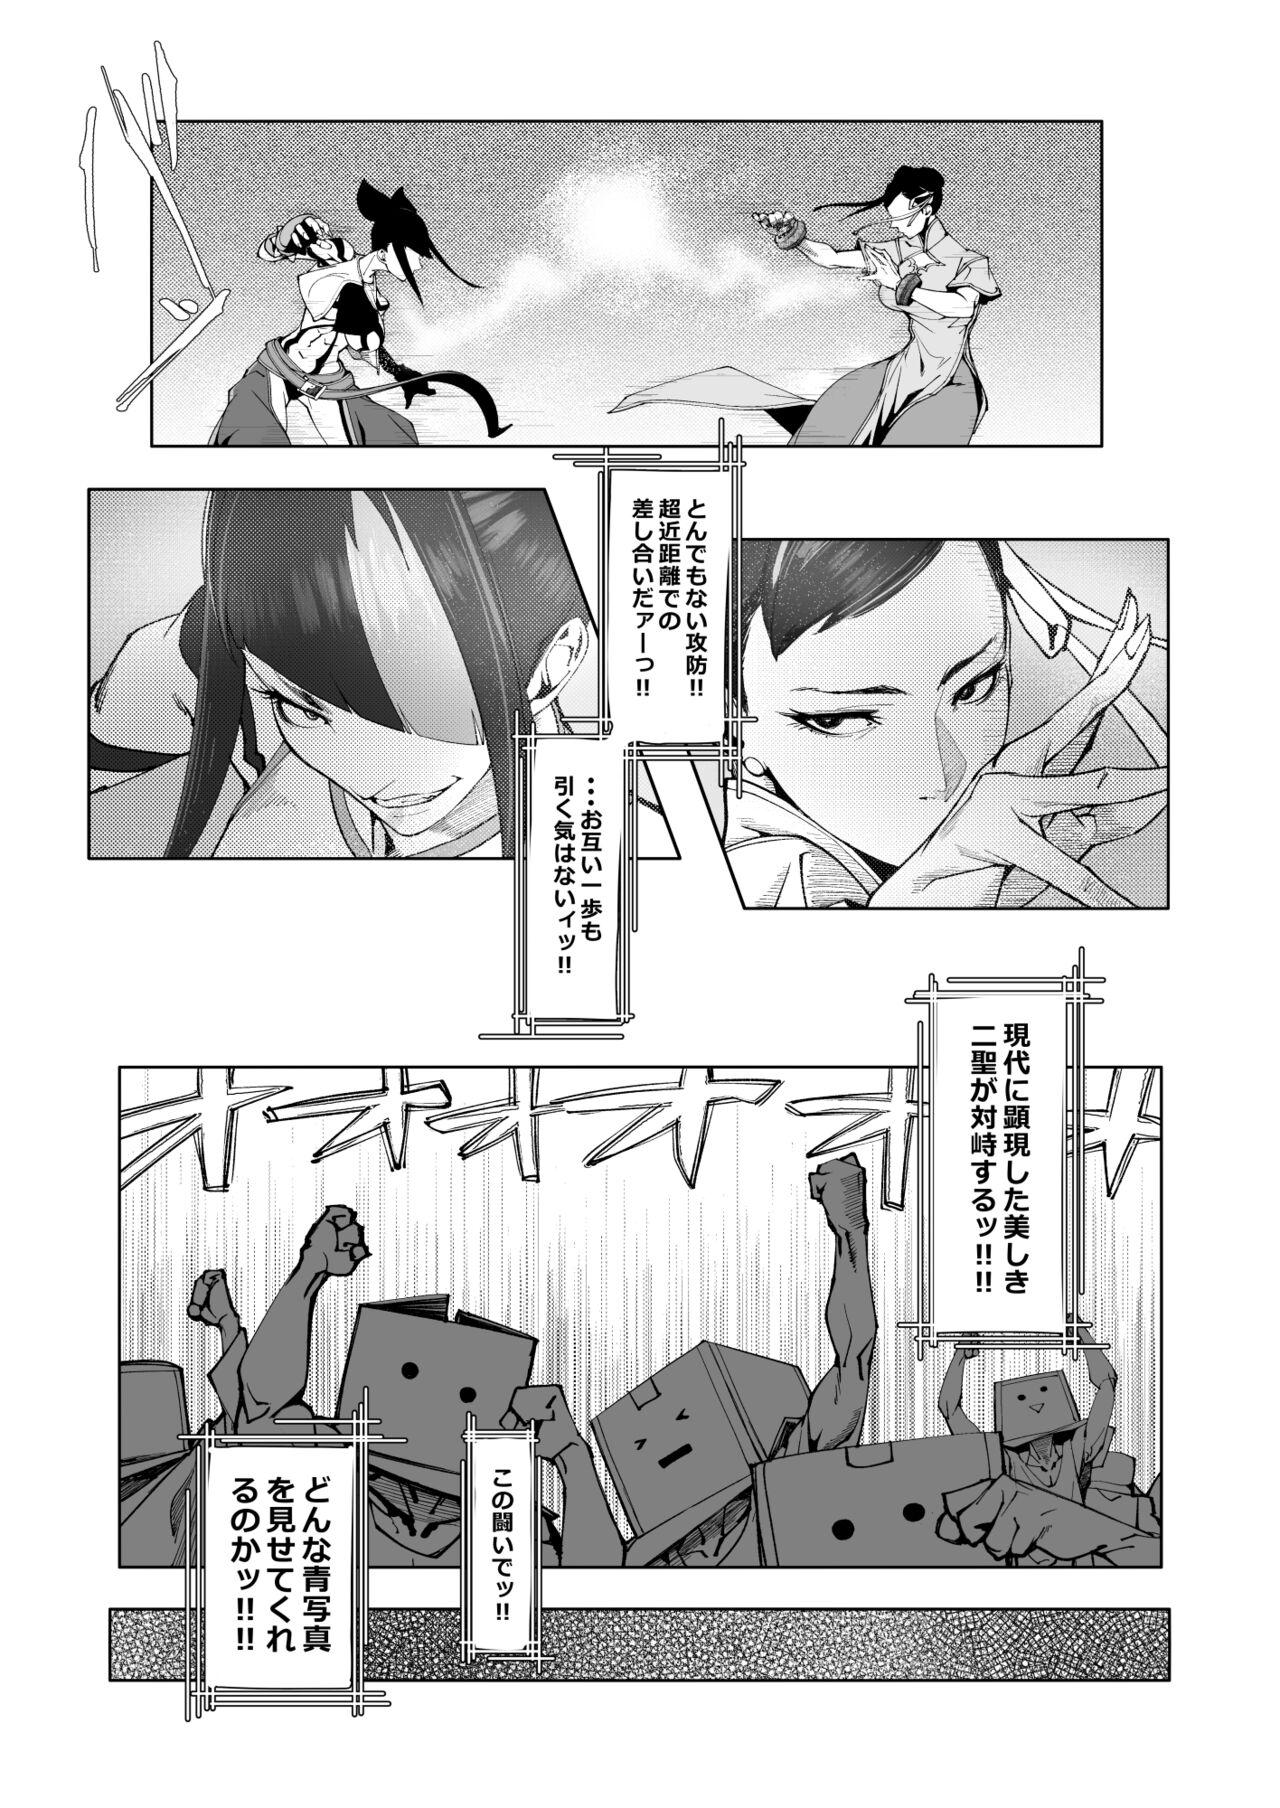 Japan Backstab - Street fighter Ejaculation - Page 4